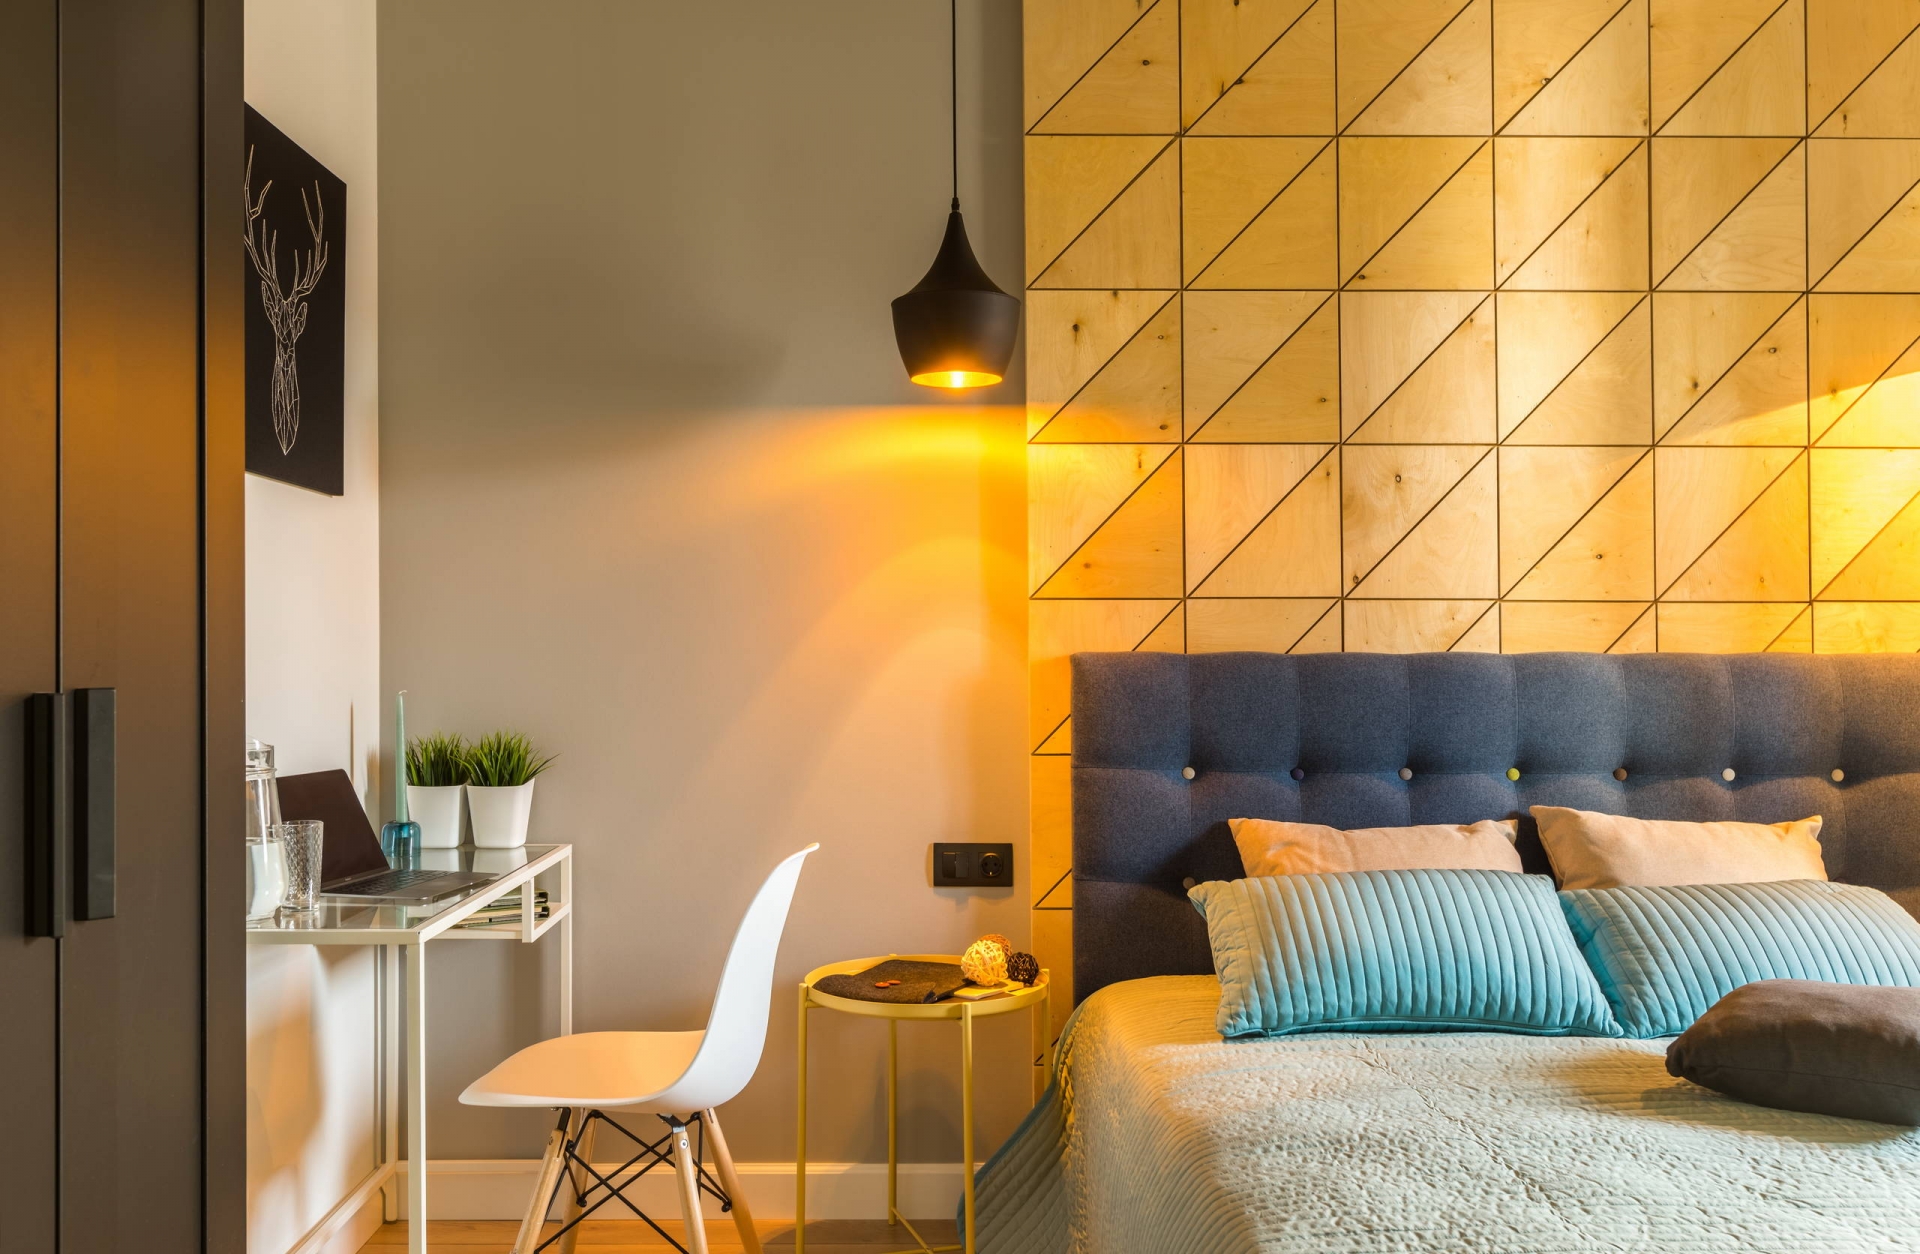 Căn phòng chỉ có duy nhất chiếc bàn nhỏ đầu giường là sơn màu vàng, thế nhưng hiệu ứng ánh sáng vàng ấm kết hợp vật liệu gỗ đã khiến sắc vàng bao phủ không gian.